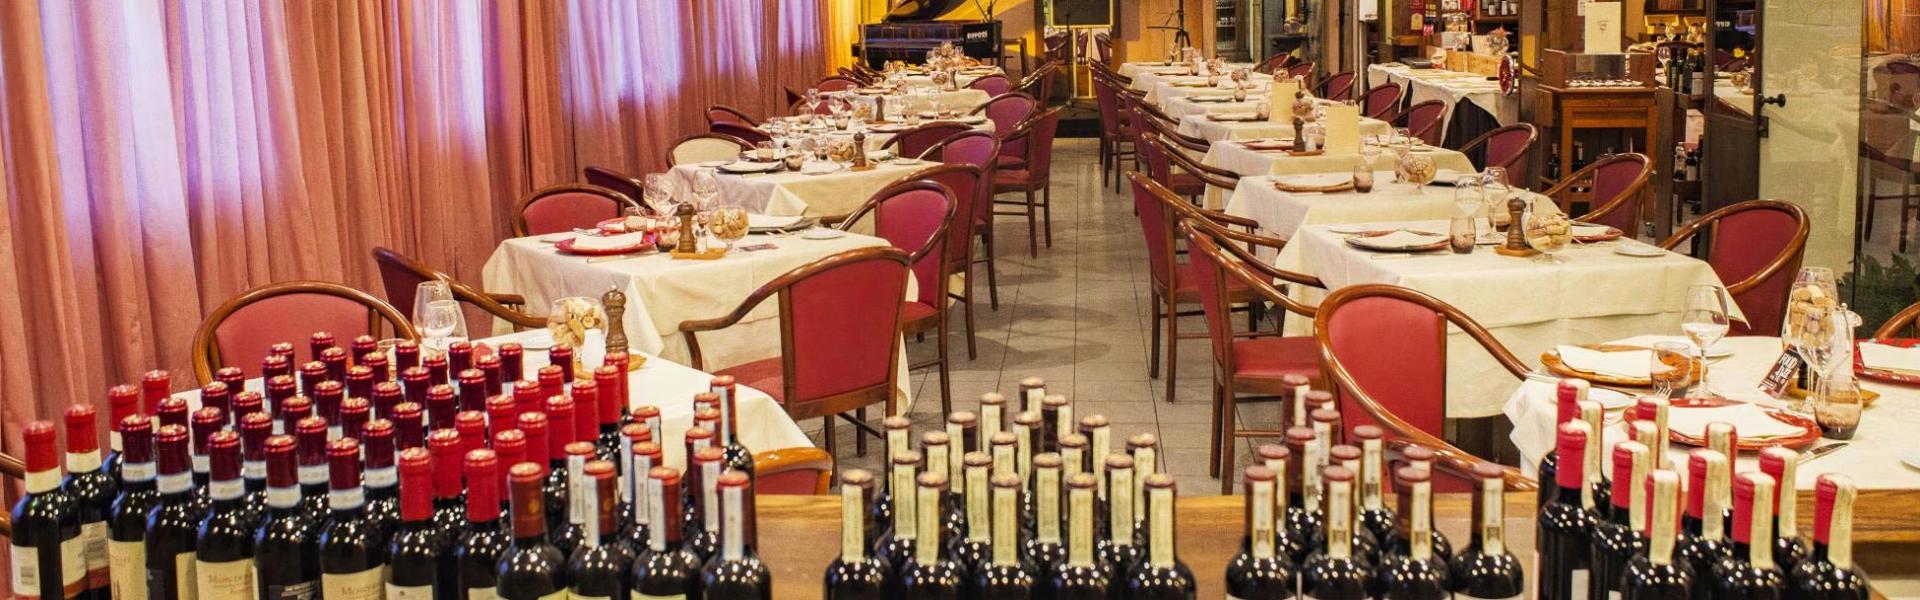 hotelgio it ristorante-enoteca-gio-arte-e-vini-perugia 013